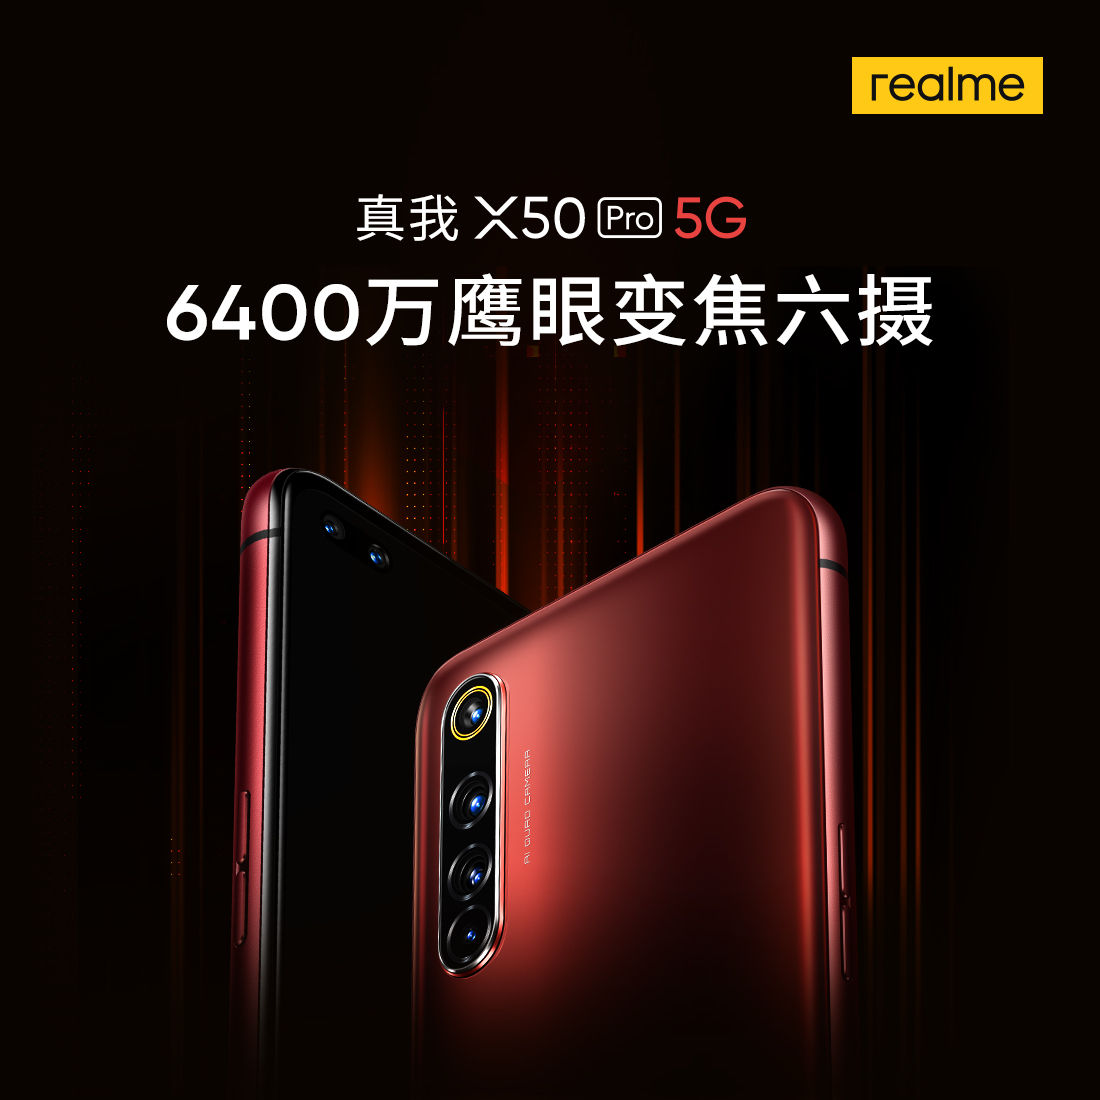 Realme X50 Pro 5G confirmado para contar con configuración de cámara cuádruple de 64MP ...